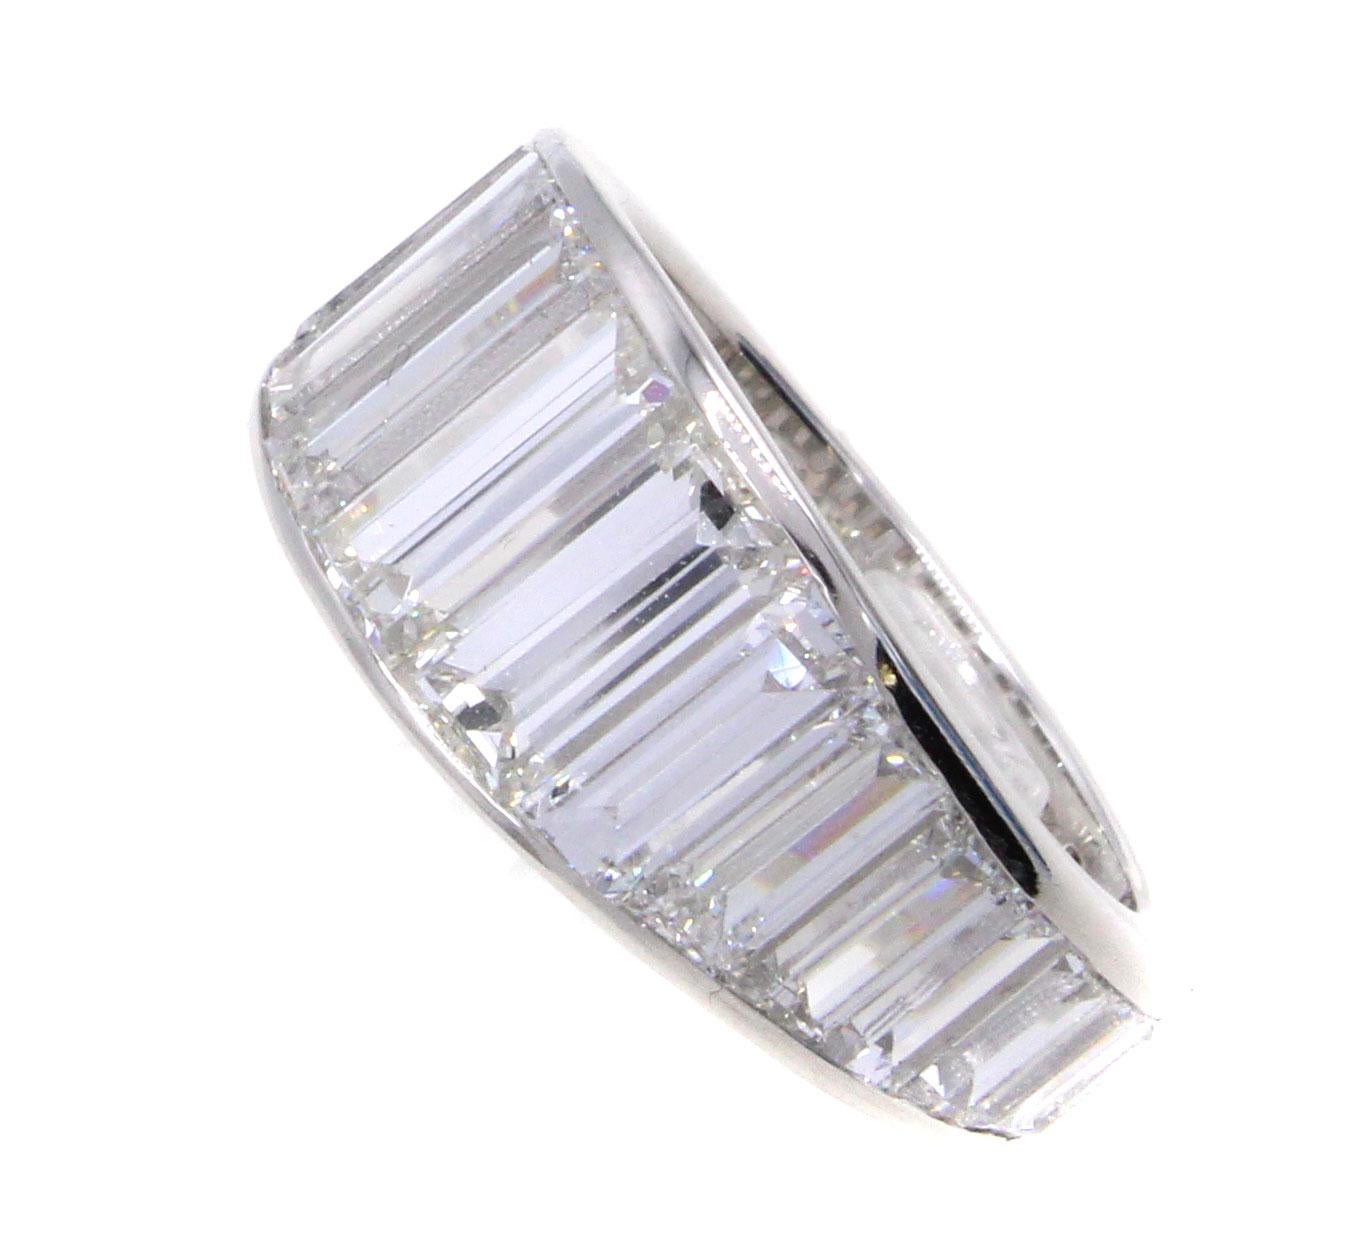 Cet anneau éternel en platine, unique et réalisé de main de maître, est serti de 26 diamants baguettes blancs et brillants de taille graduée, pour un poids total de 8,10 carats. Chaque diamant de cette bague a été parfaitement taillé pour s'adapter